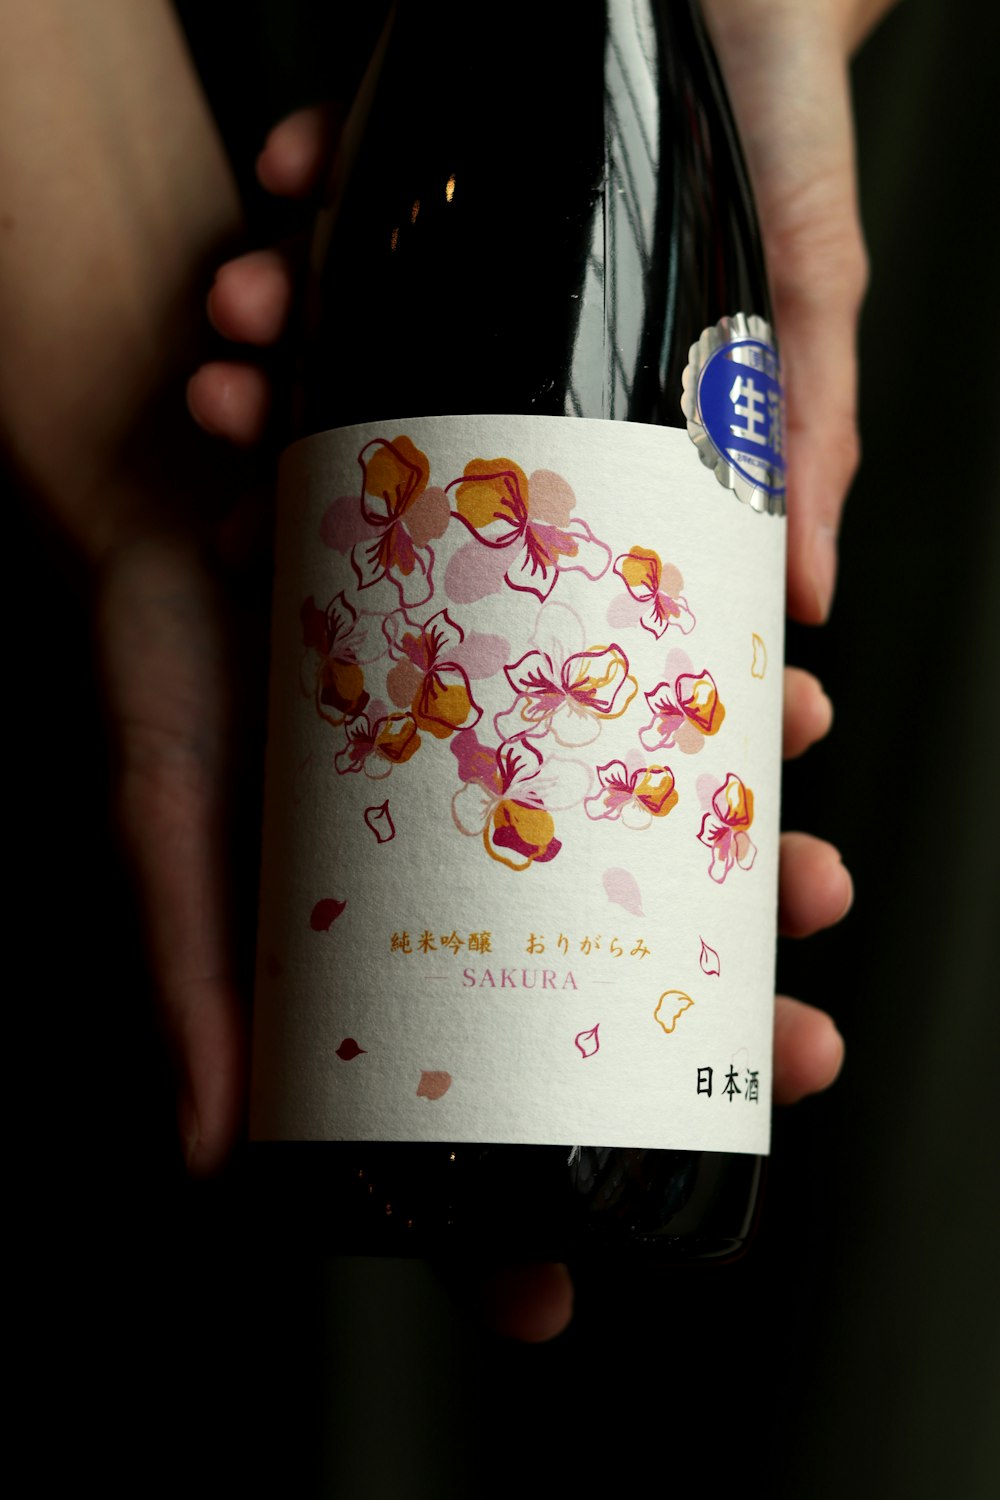 Sakura labeled bottle